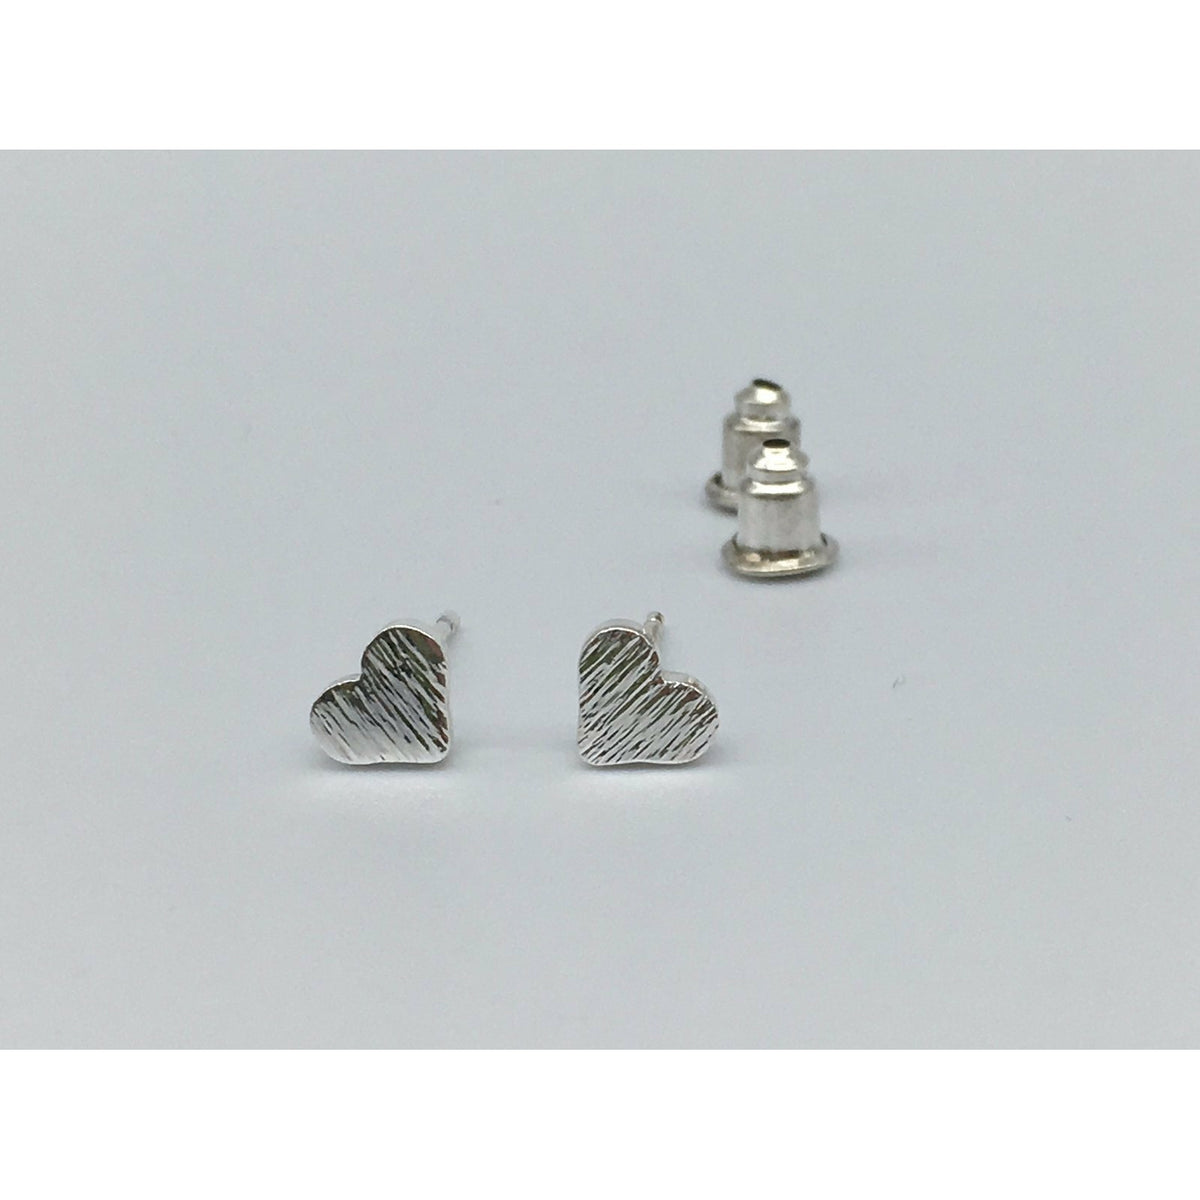 Tween to Teen Earrings Silver Brushed Metal Tiny Heart Stud Earrings 0720252999890 tween and teen